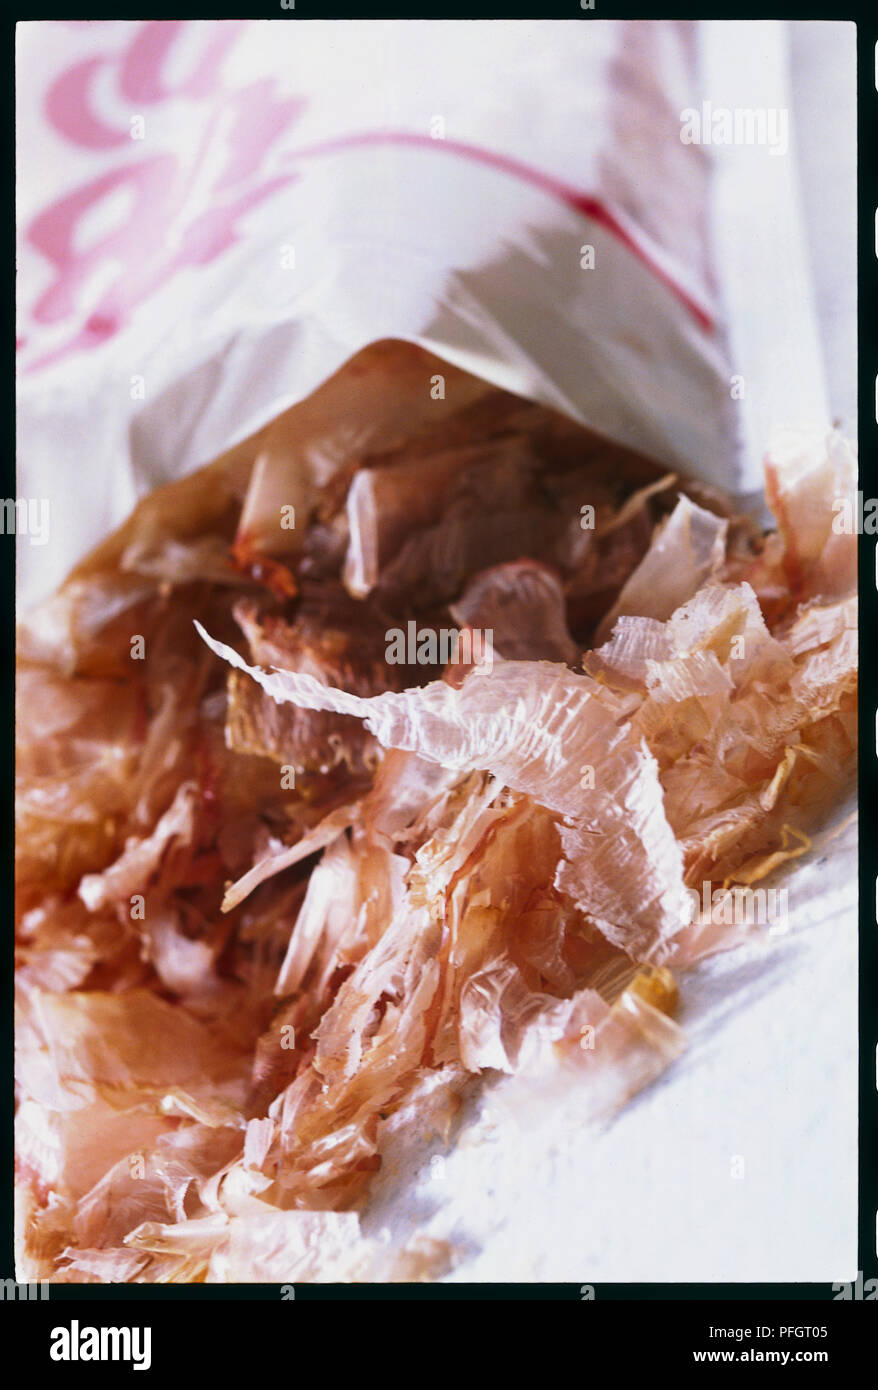 Shaved bonito flakes (katsuo bushi), close-up Stock Photo